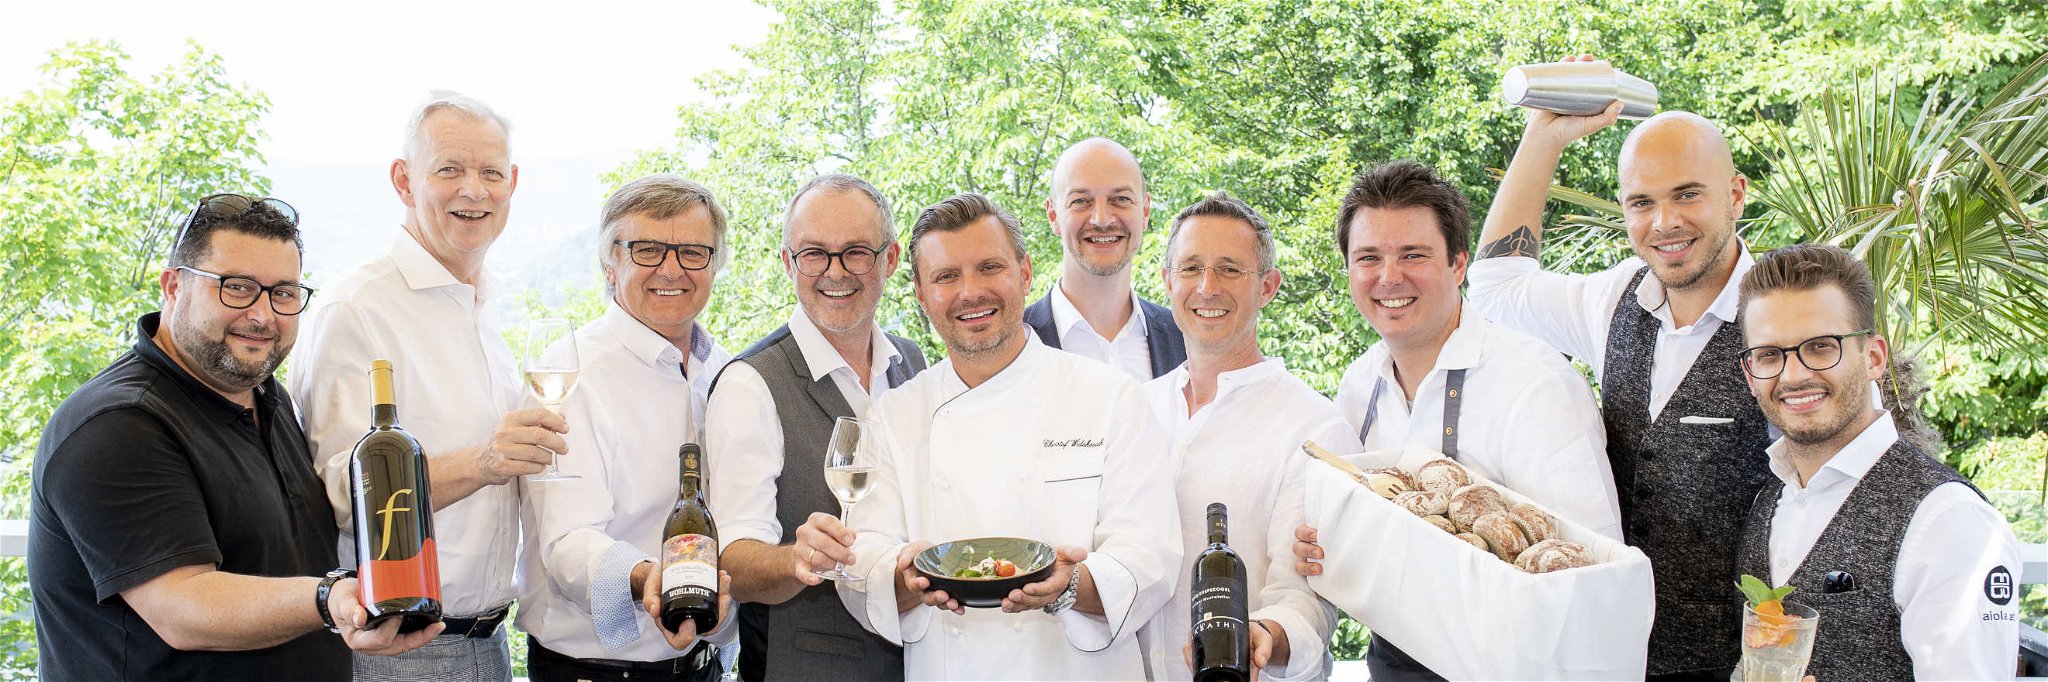 Organisator Ingo Reinhardt mit Gastronomen, Winzern und Cocktail-Team.